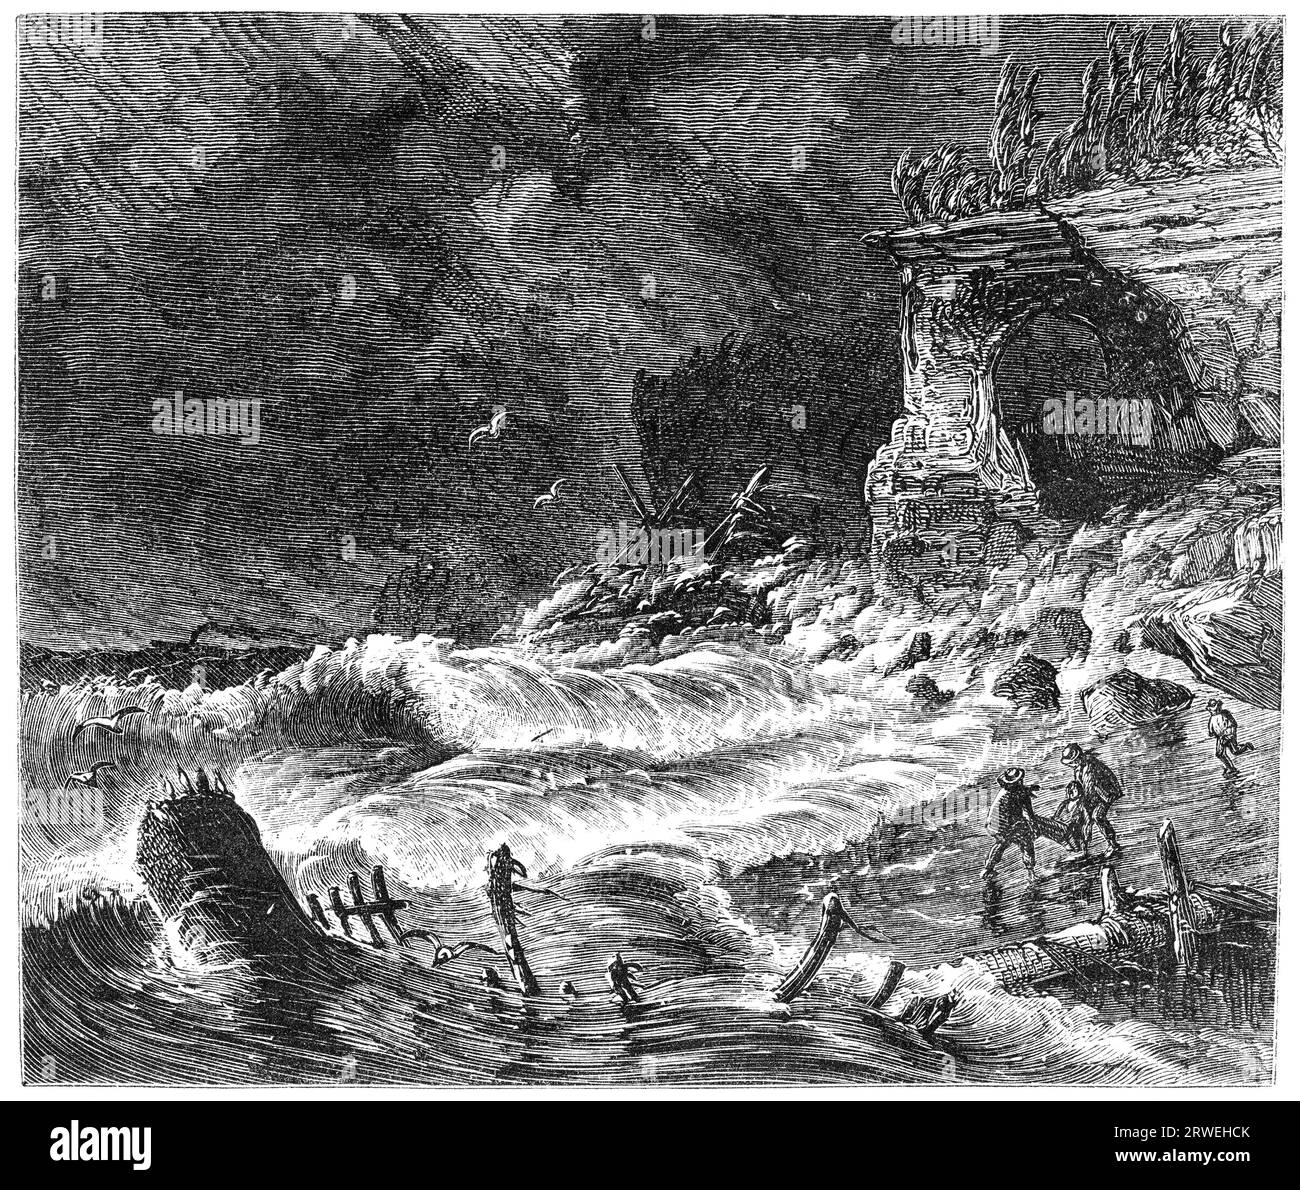 Une scène de tempête sur le lac supérieur. Naufrage sur la plage. Illustration d'un magazine imprimé en 1870 Banque D'Images